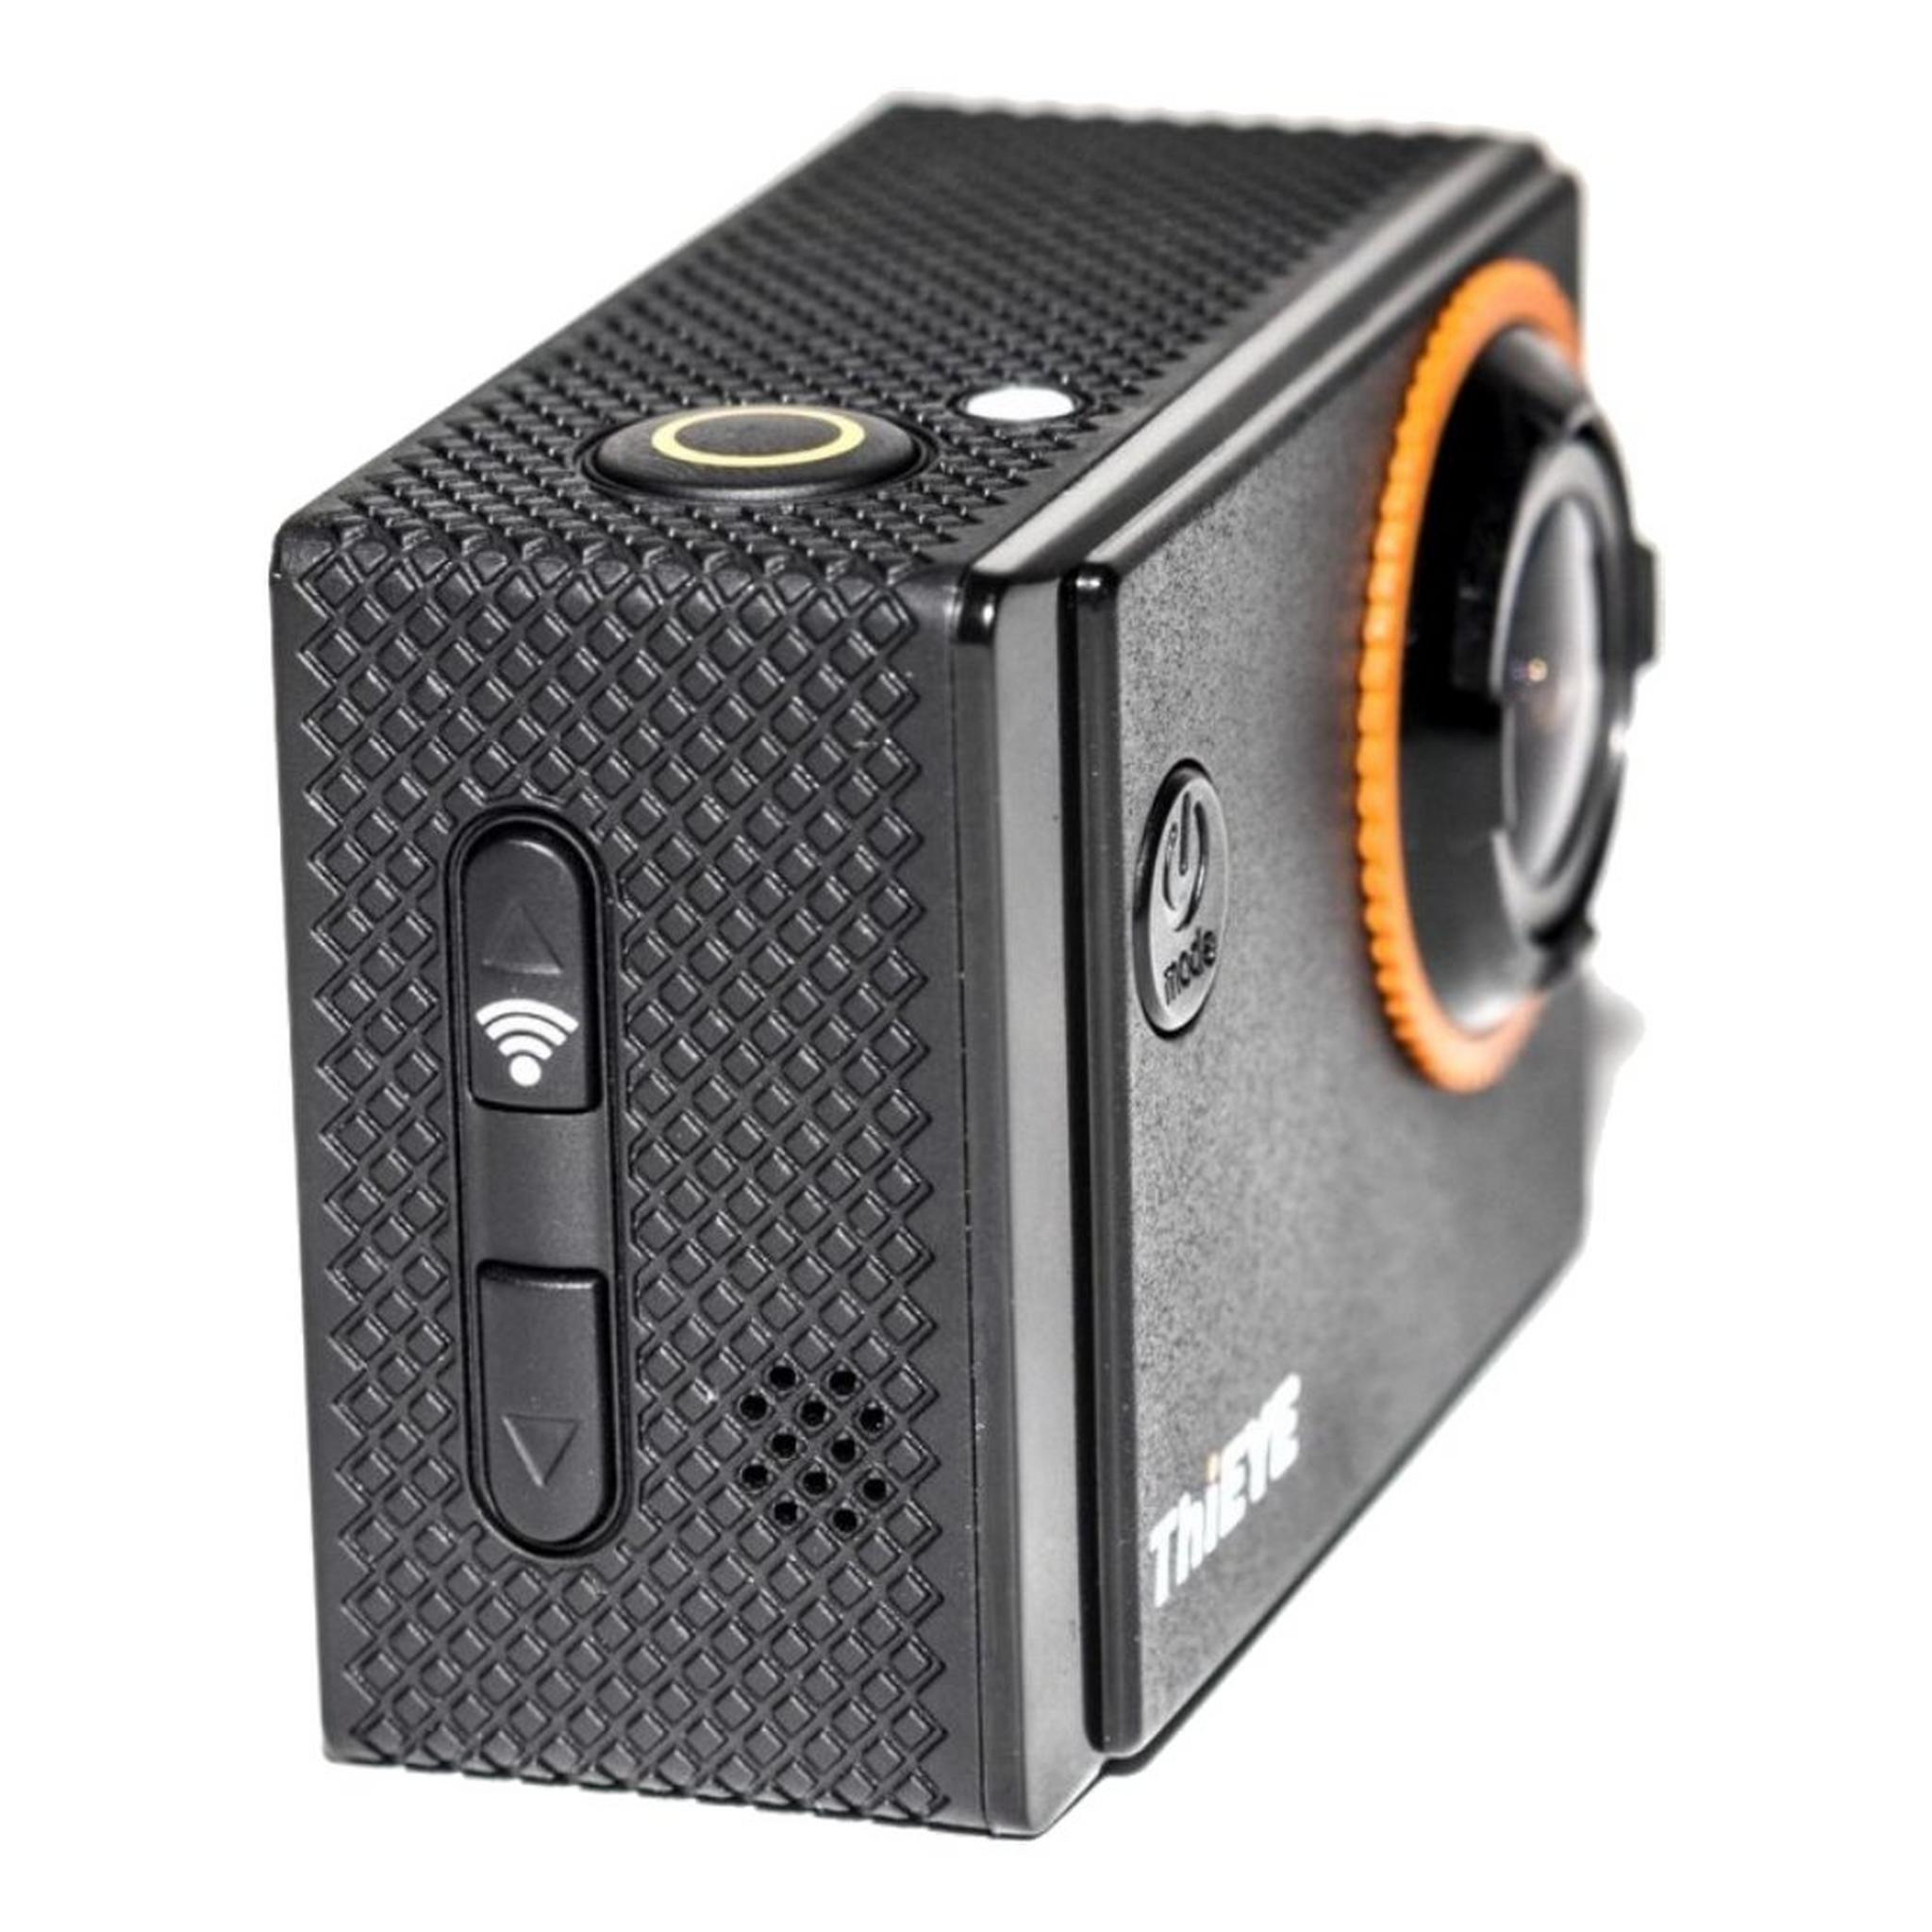 كاميرا الإثارة ثي آي آي٦٠ بلس - ٤ كي بدقة ١٠٨٠ بكسل وتقنية الواي فاي - أسود